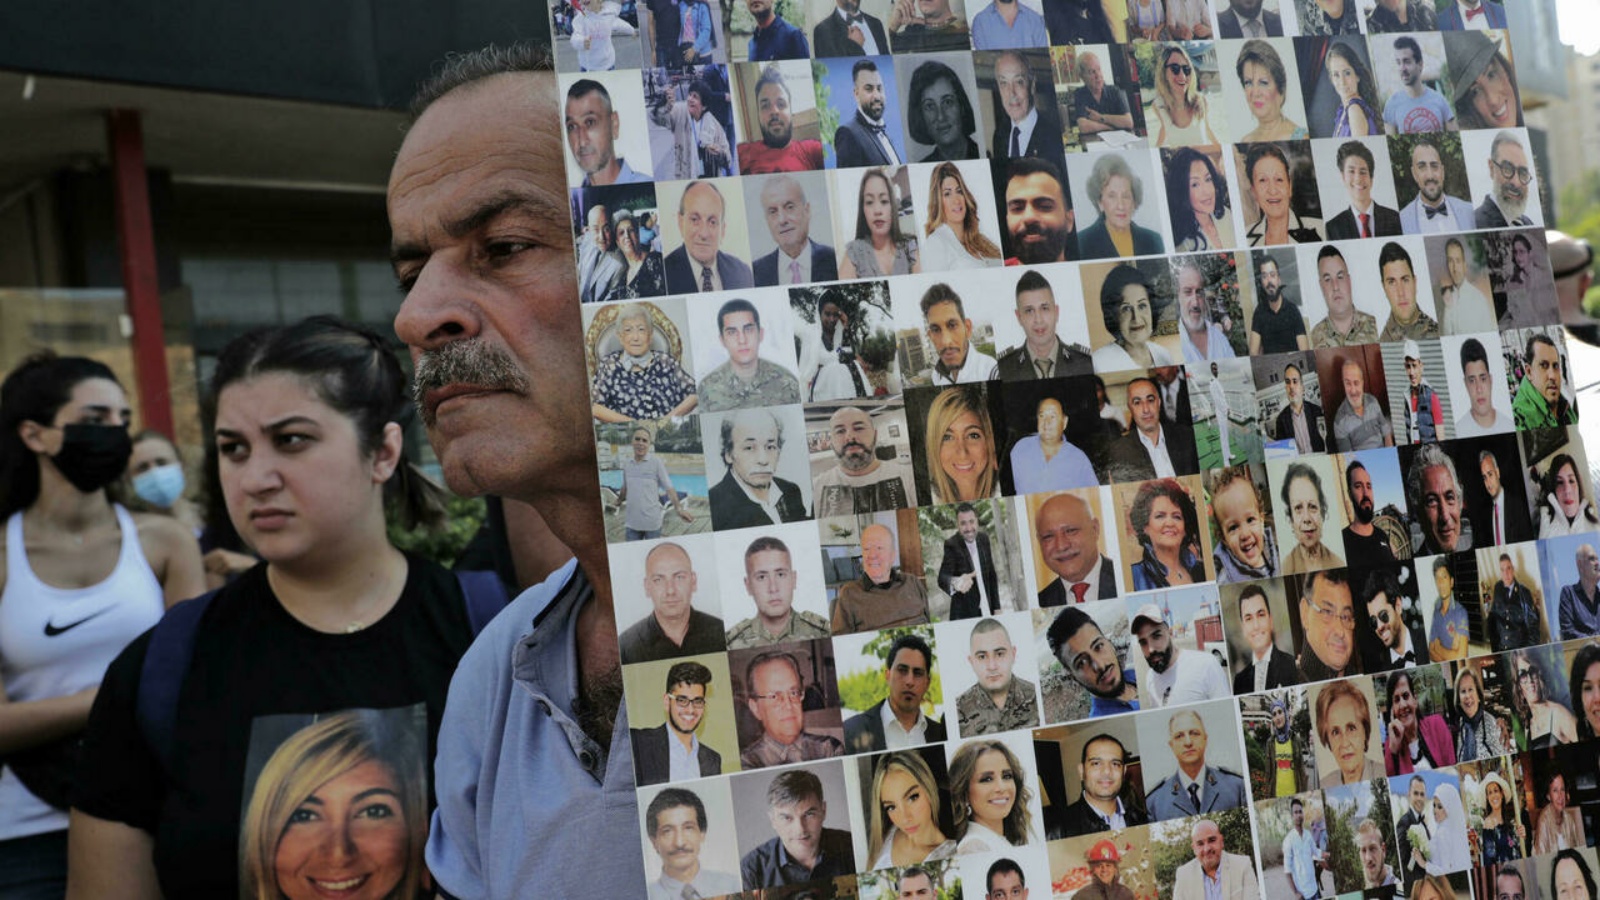 رجل يحمل لافتة تُظهر وجوه ضحايا انفجار مرفأ بيروت 2020 كمتظاهرين وأفراد عائلات الضحايا في تظاهرة أمام قصر العدل.